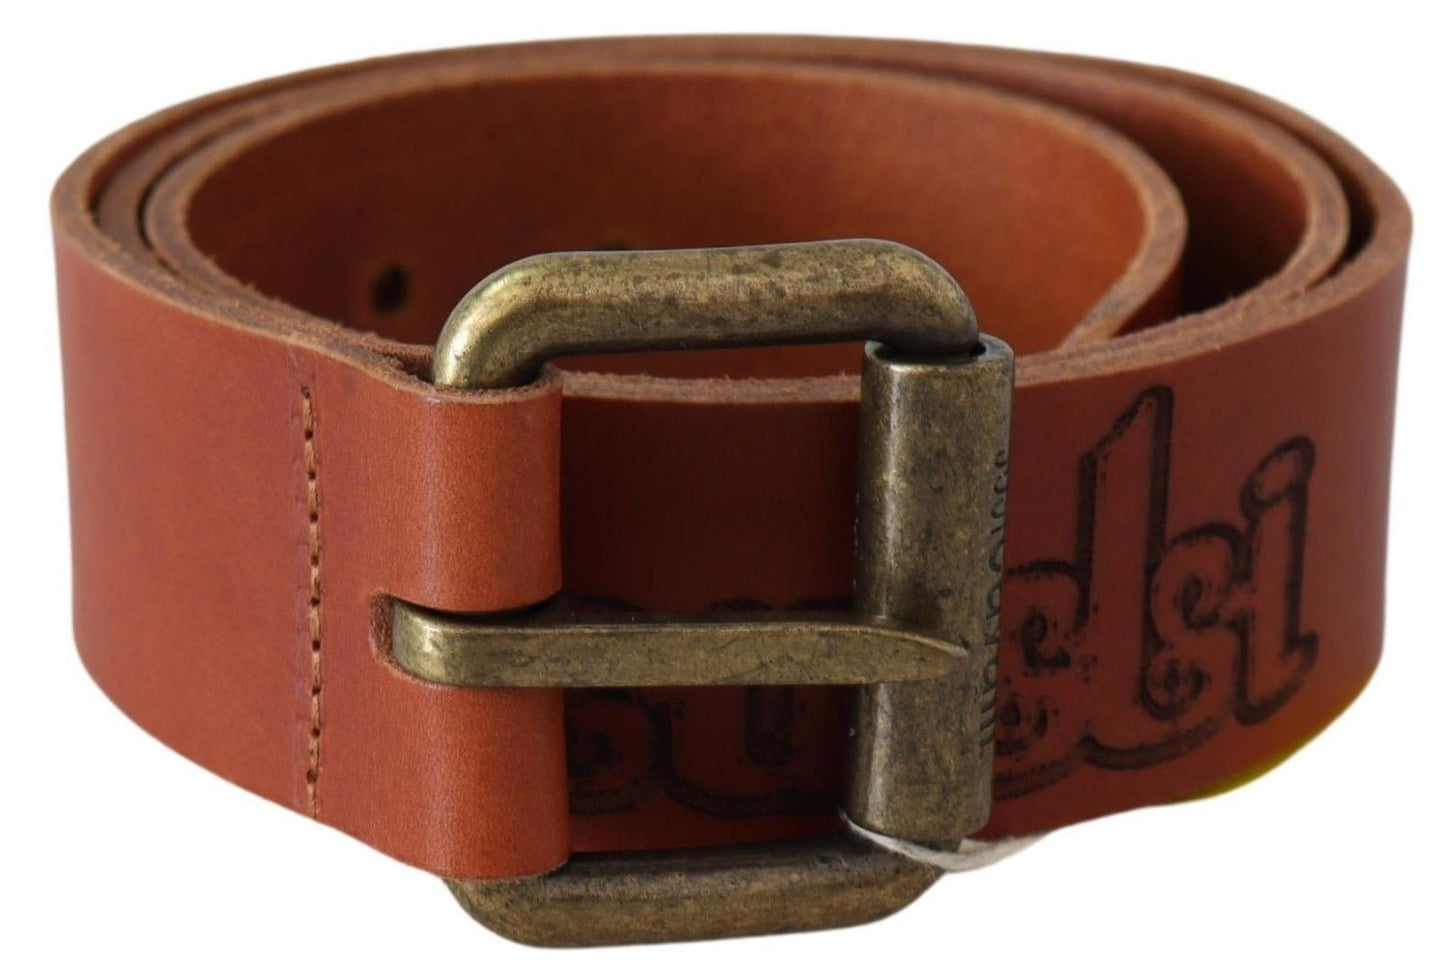 Just Cavalli Chic Brown Leather Logo Waist Belt